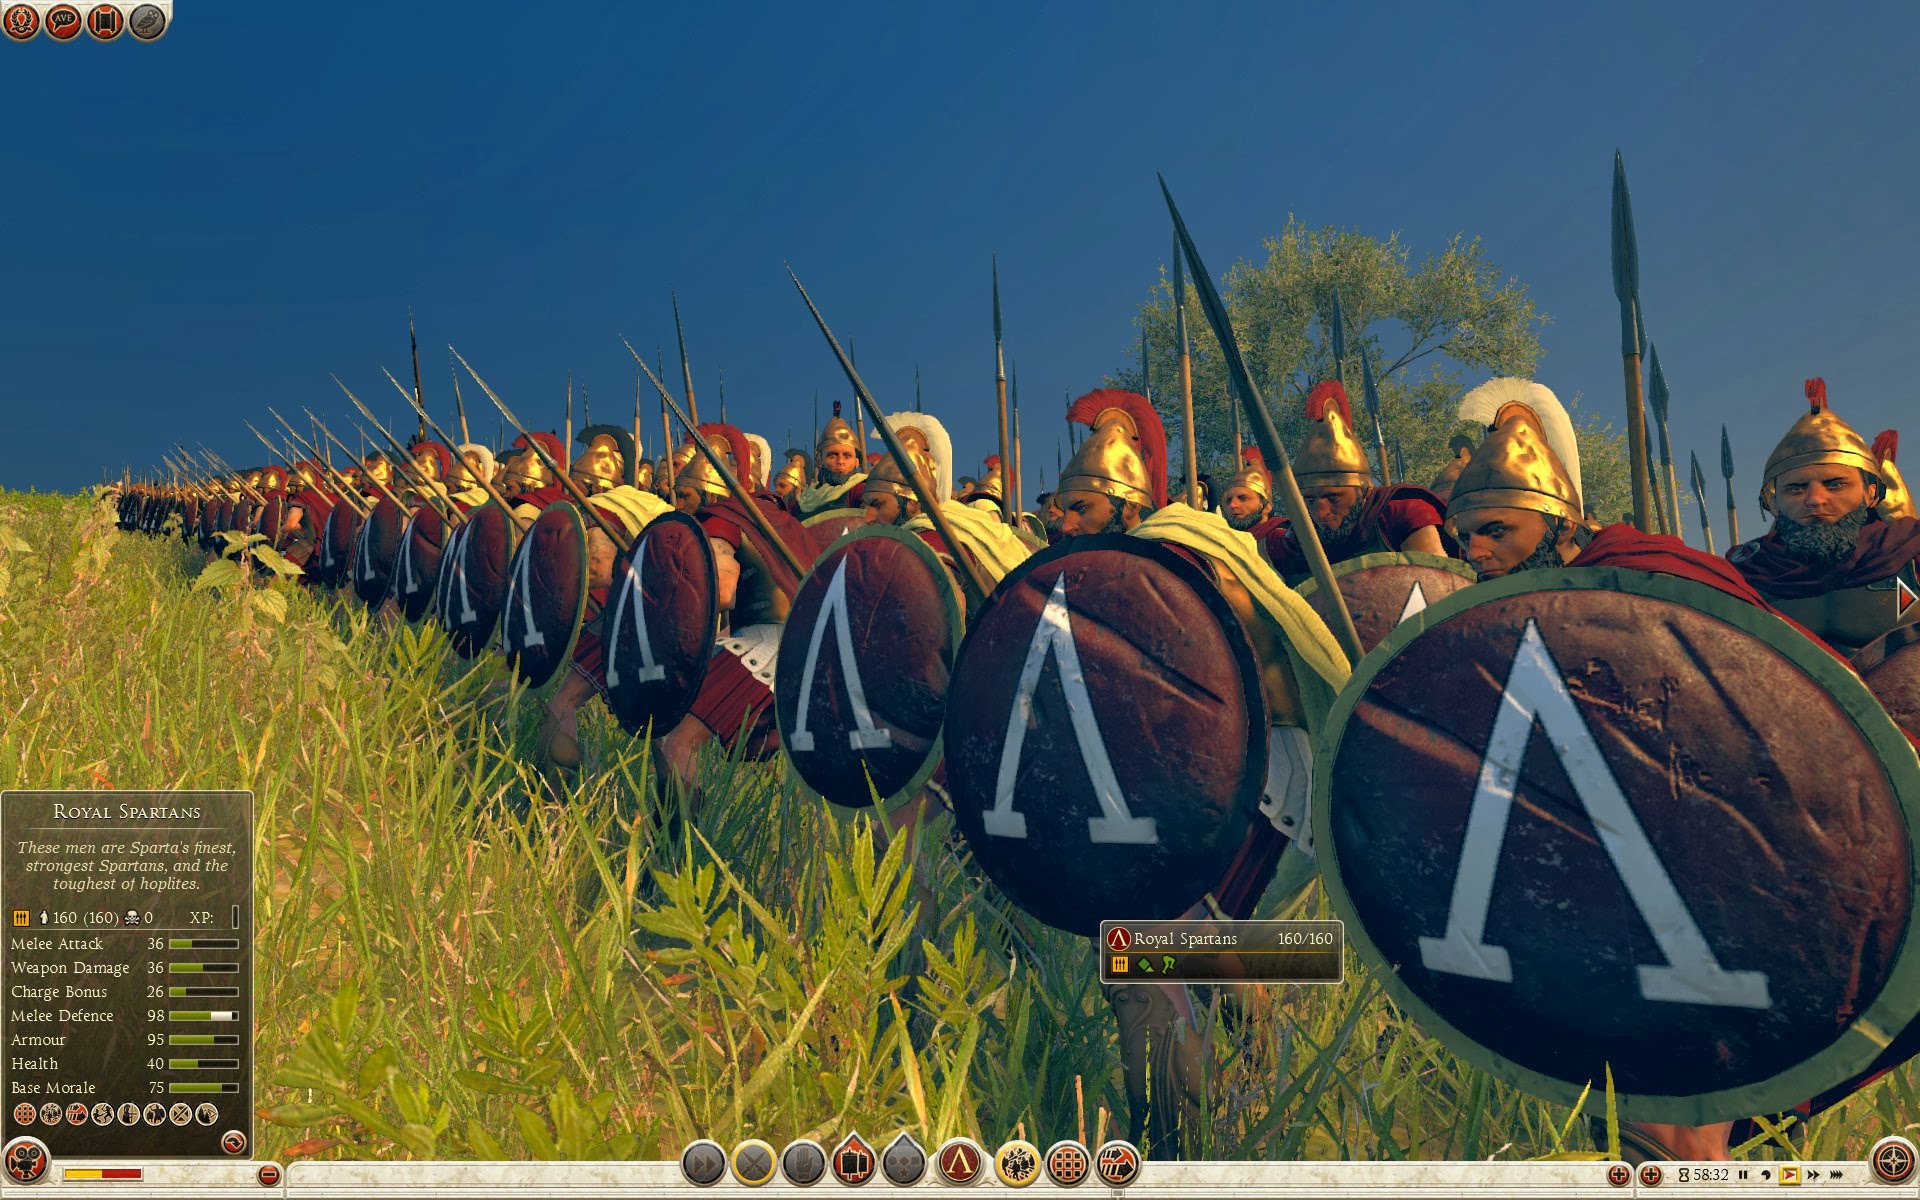 Kraliyet Spartalıları